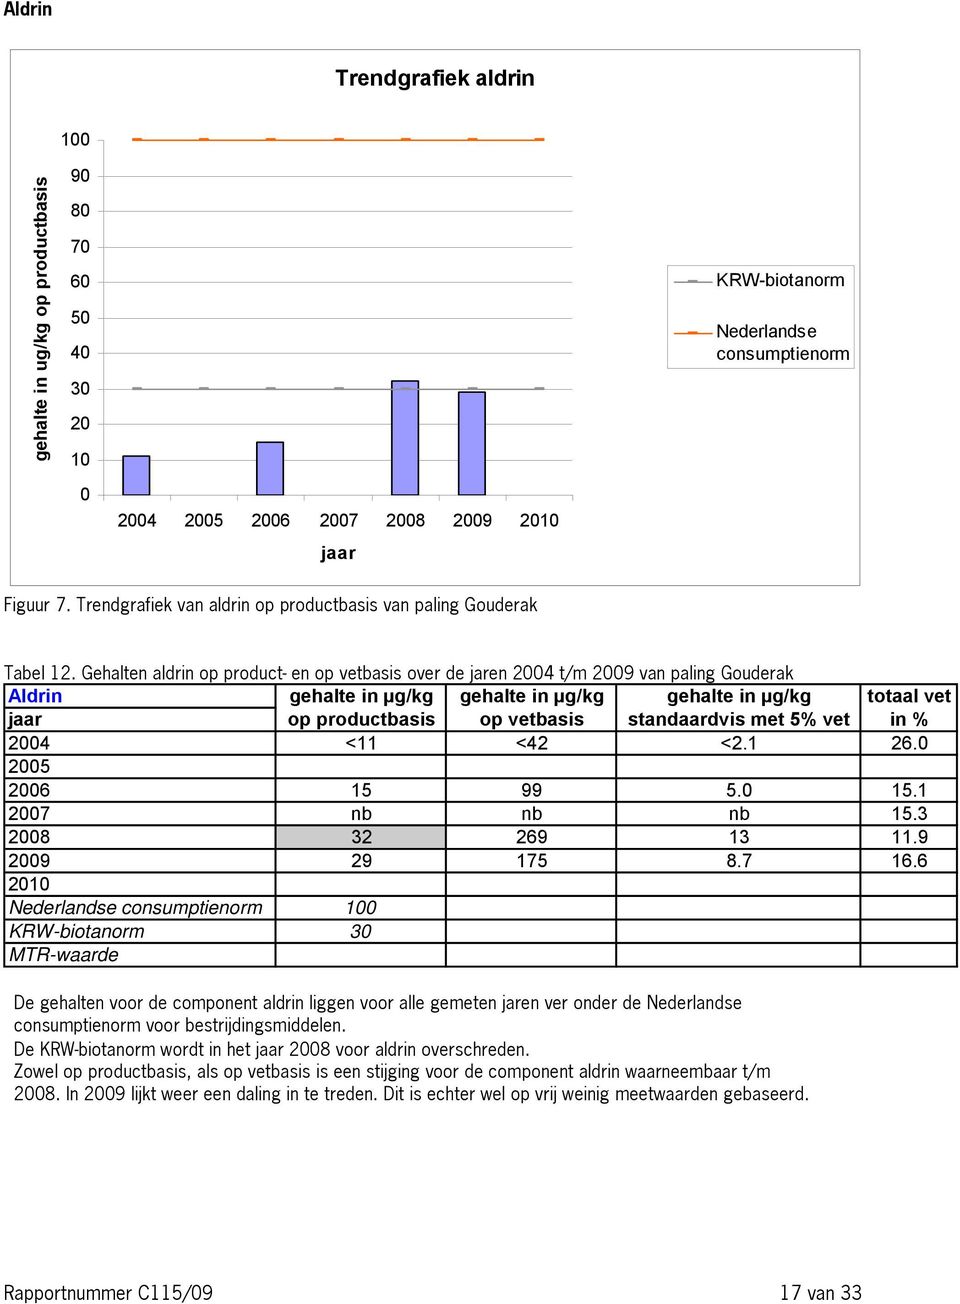 Gehalten aldrin op product- en op vetbasis over de jaren 2004 t/m 2009 van paling Gouderak Aldrin gehalte in µg/kg gehalte in µg/kg gehalte in µg/kg totaal vet jaar op productbasis op vetbasis